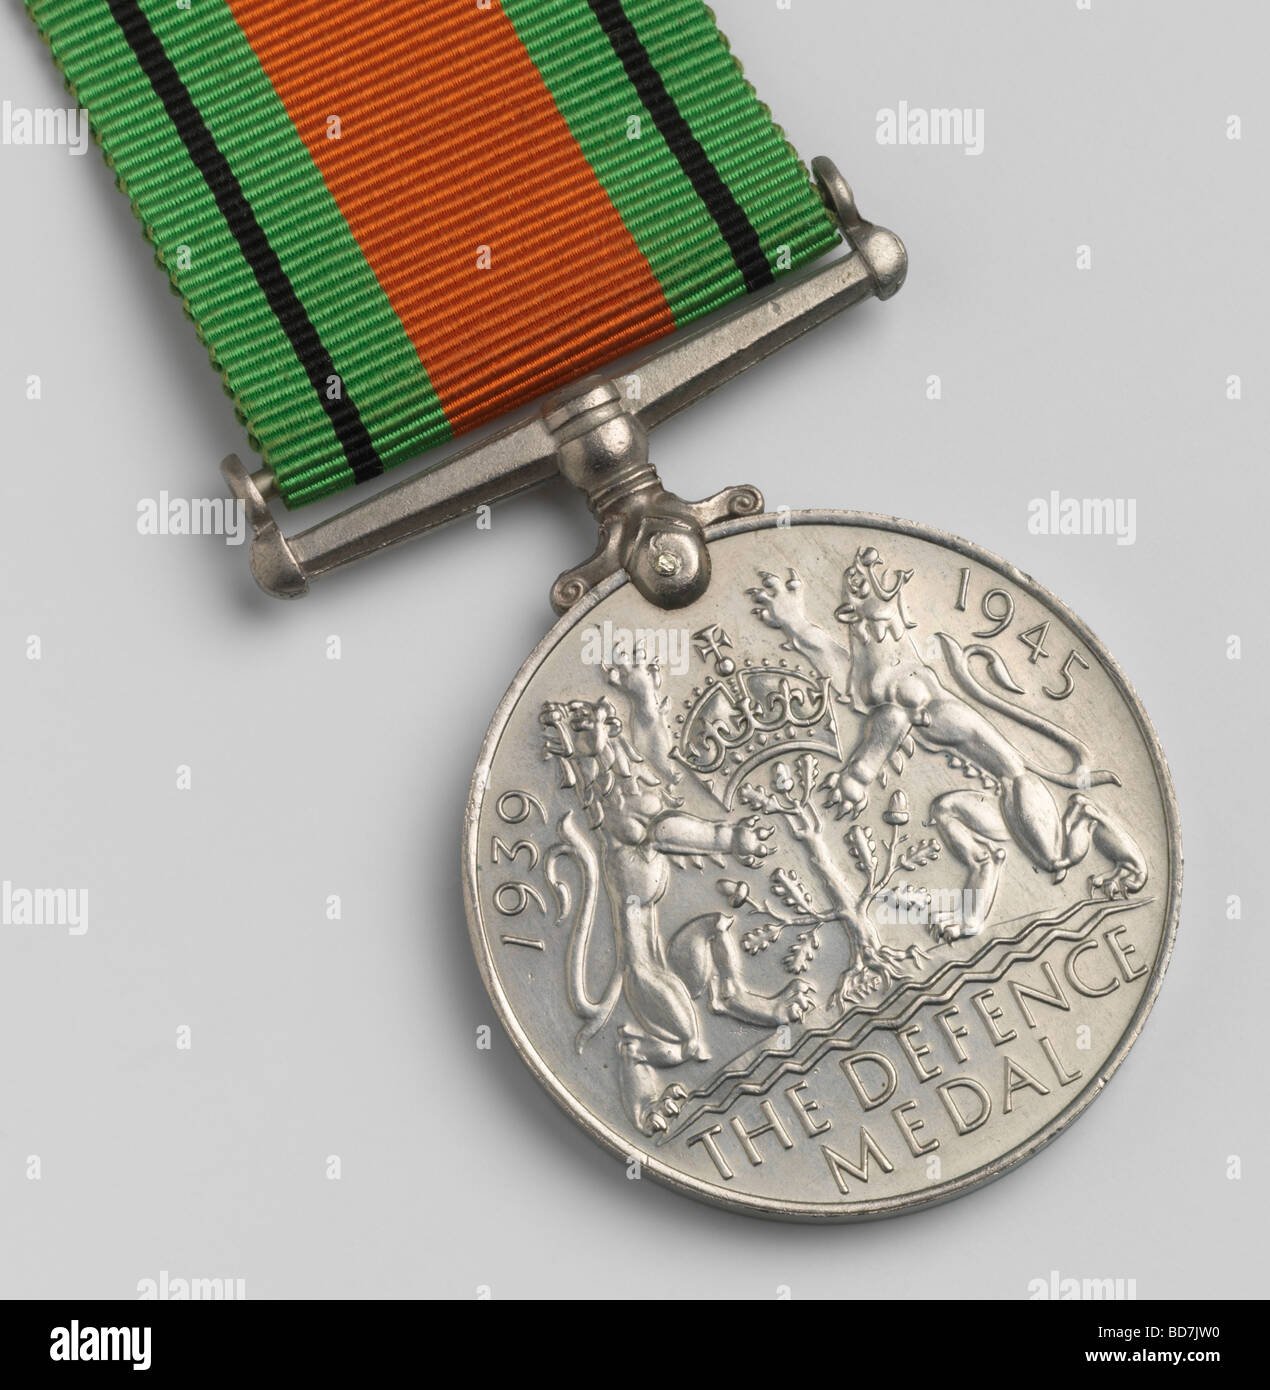 El reverso de la medalla de servicio y de la Mancomunidad Británica desde la segunda guerra mundial Foto de stock